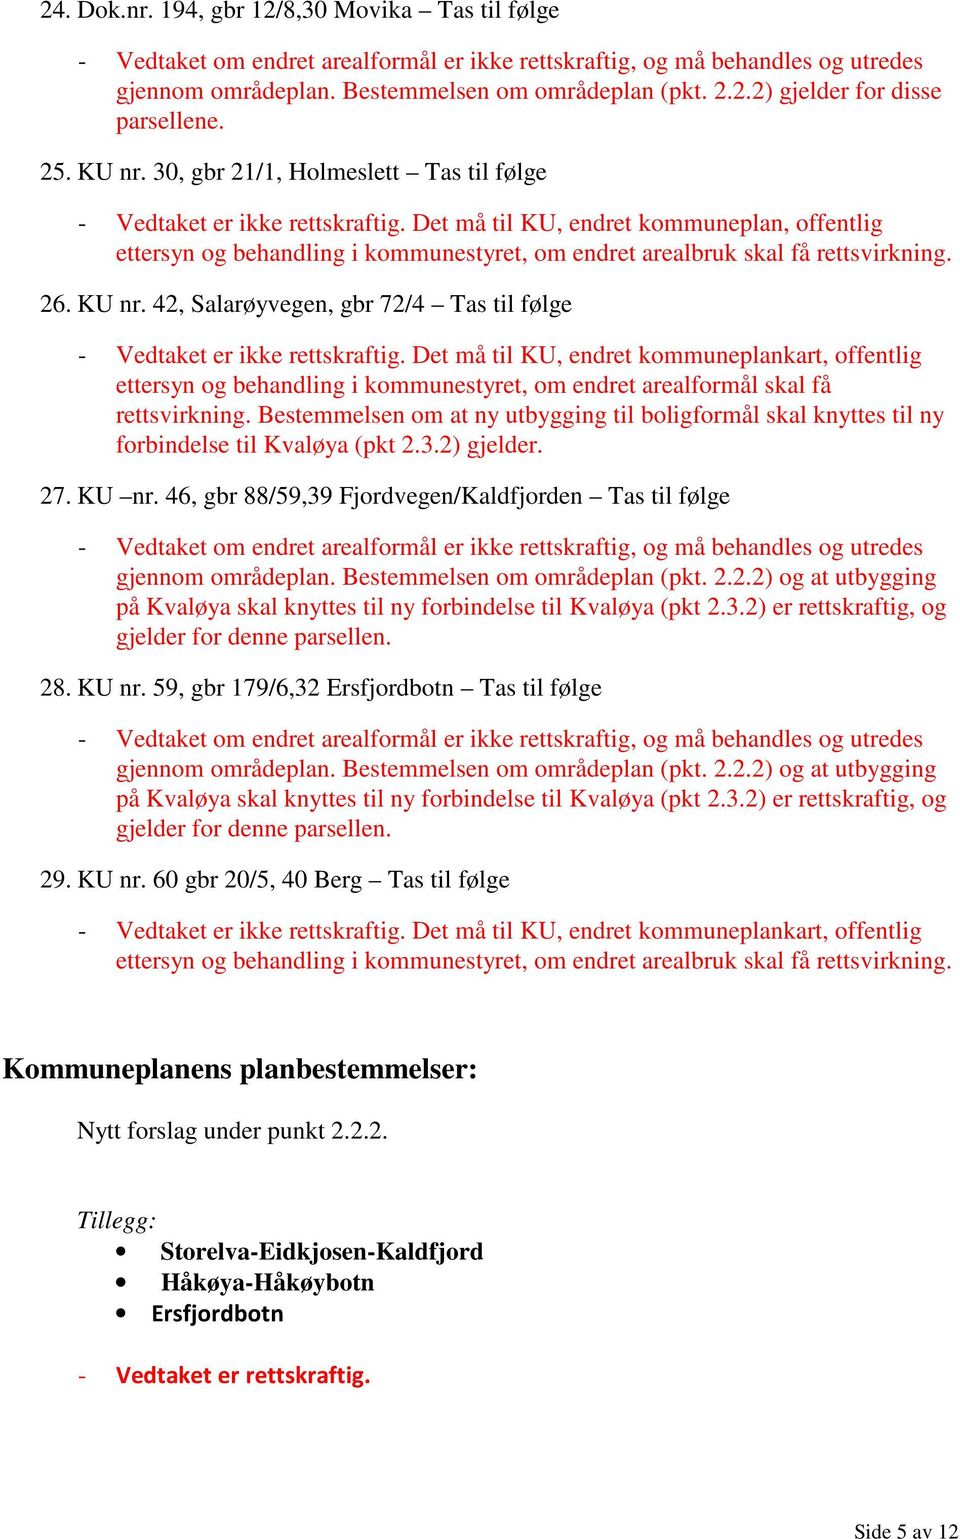 42, Salarøyvegen, gbr 72/4 Tas til følge ettersyn og behandling i kommunestyret, om endret arealformål skal få rettsvirkning.